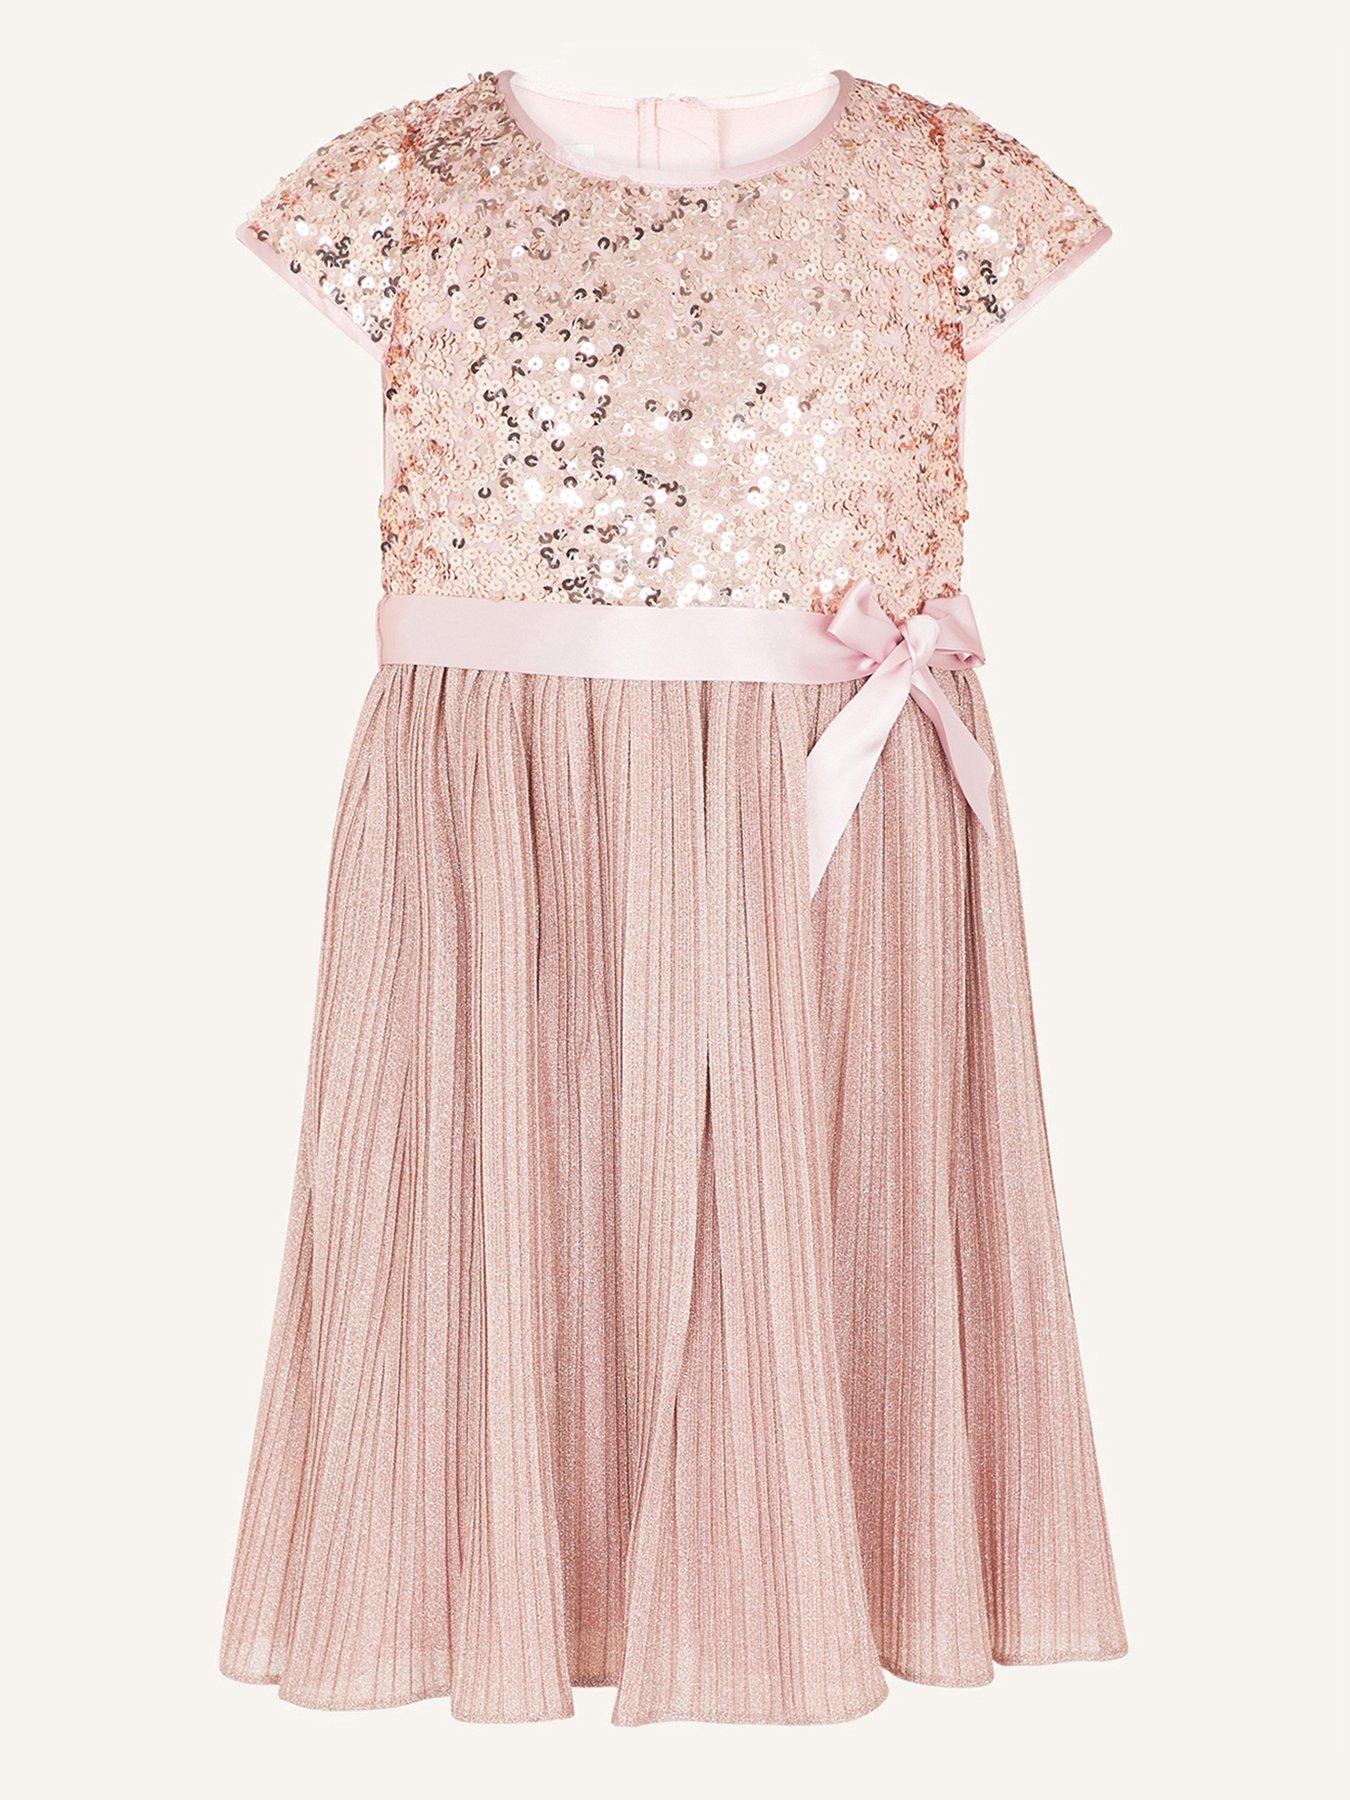 Kids Girls Gilded Rose Sequin Dress - Dusky Pink